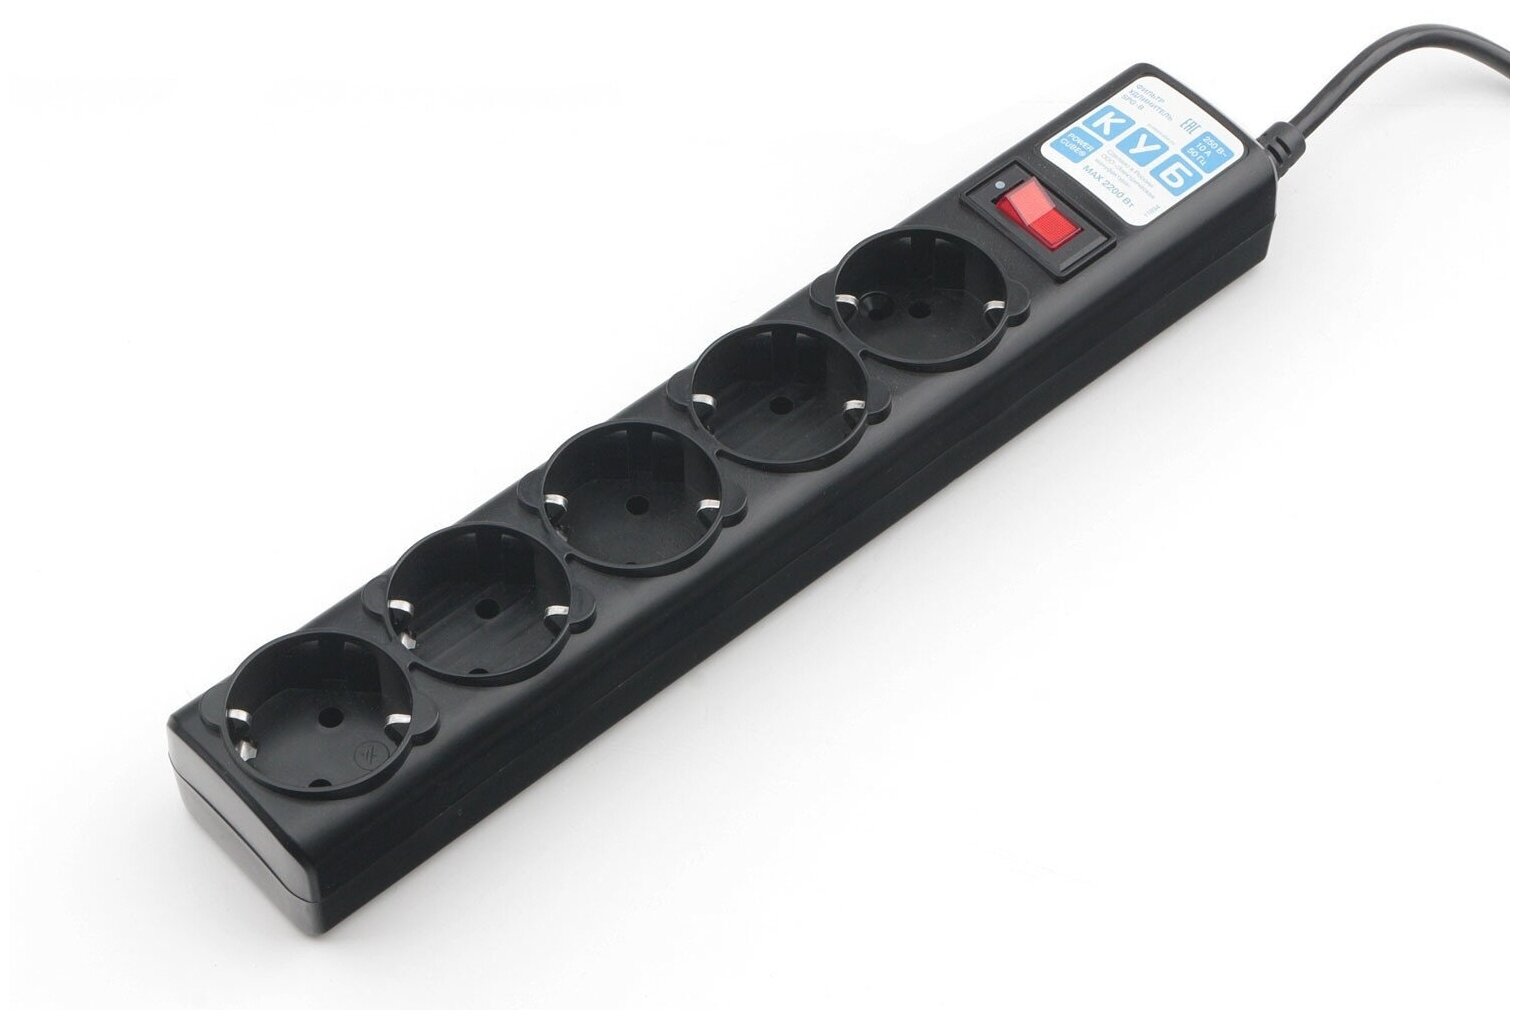 PowerCube Фильтр-удлинитель 10.0м, 5 розеток,10А (SPG5-10M), черный графит